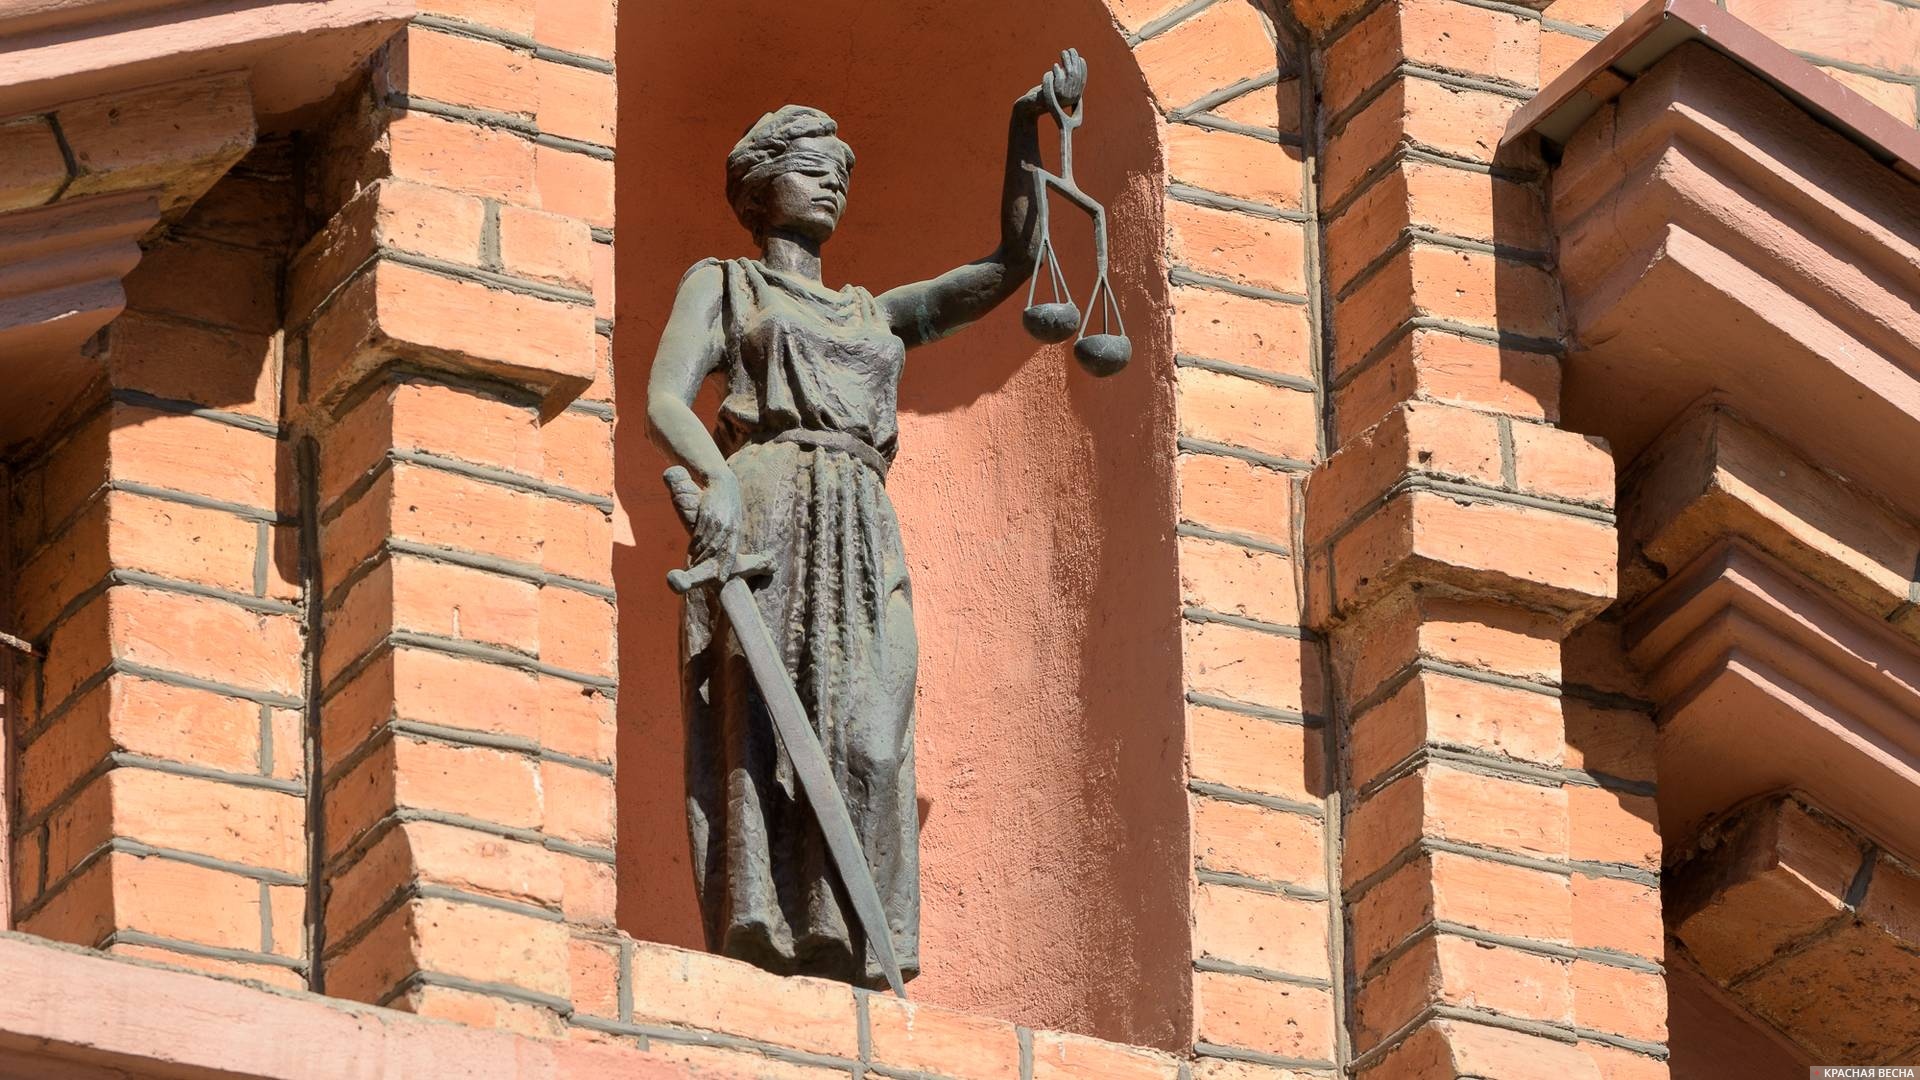 Статуя Фемиды на здании суда ЕАЭС, Минск